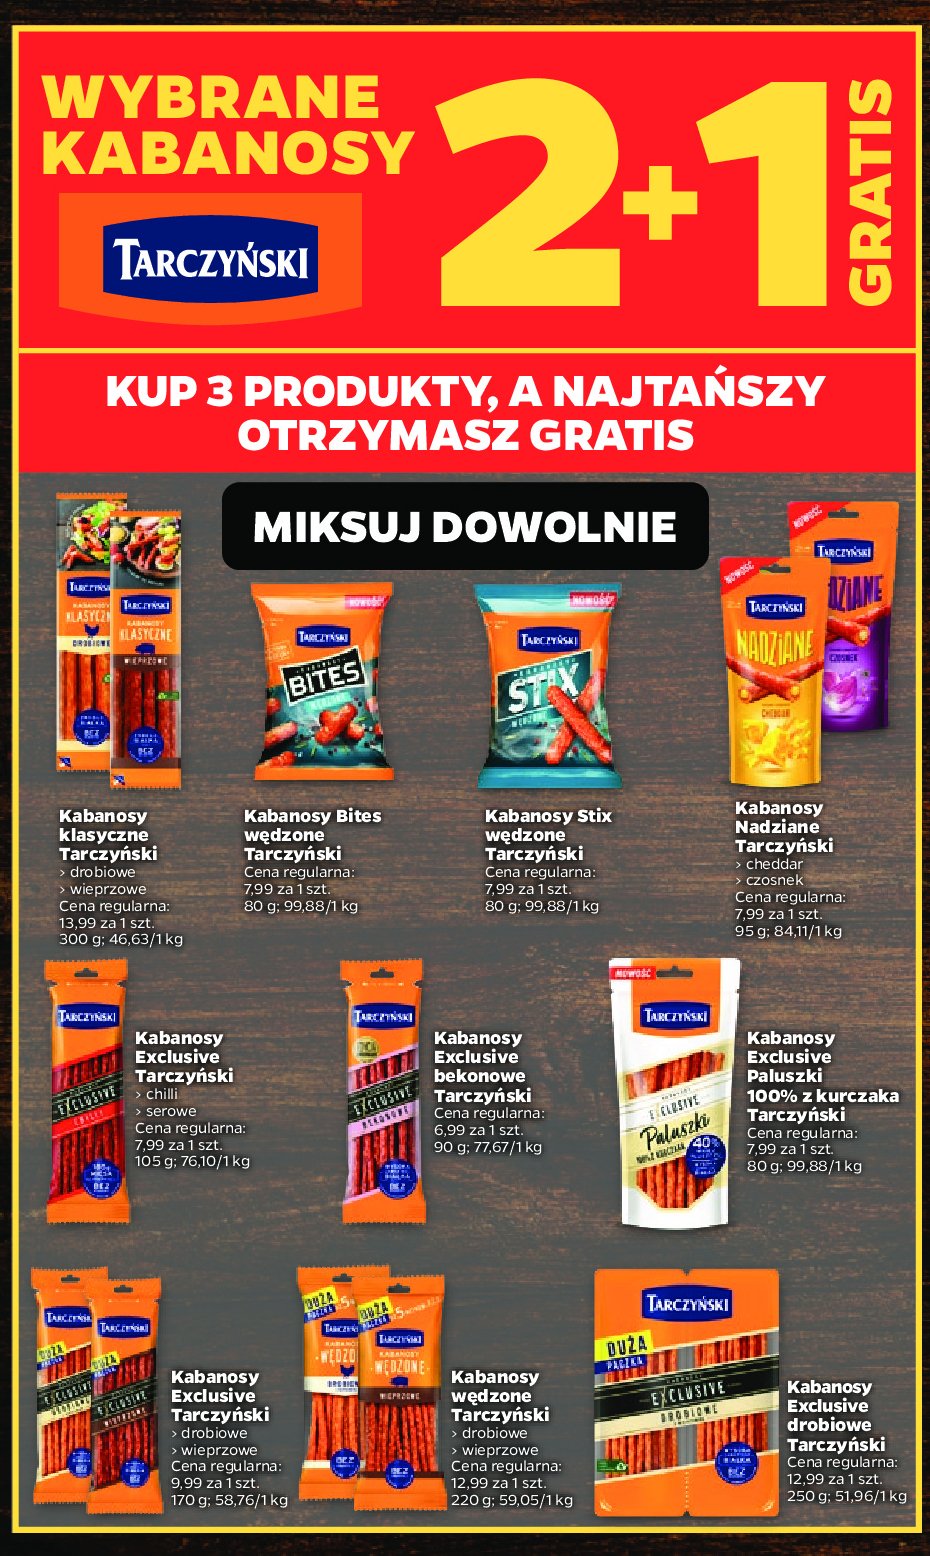 Kabanosy bekonowe Tarczyński exclusive promocja